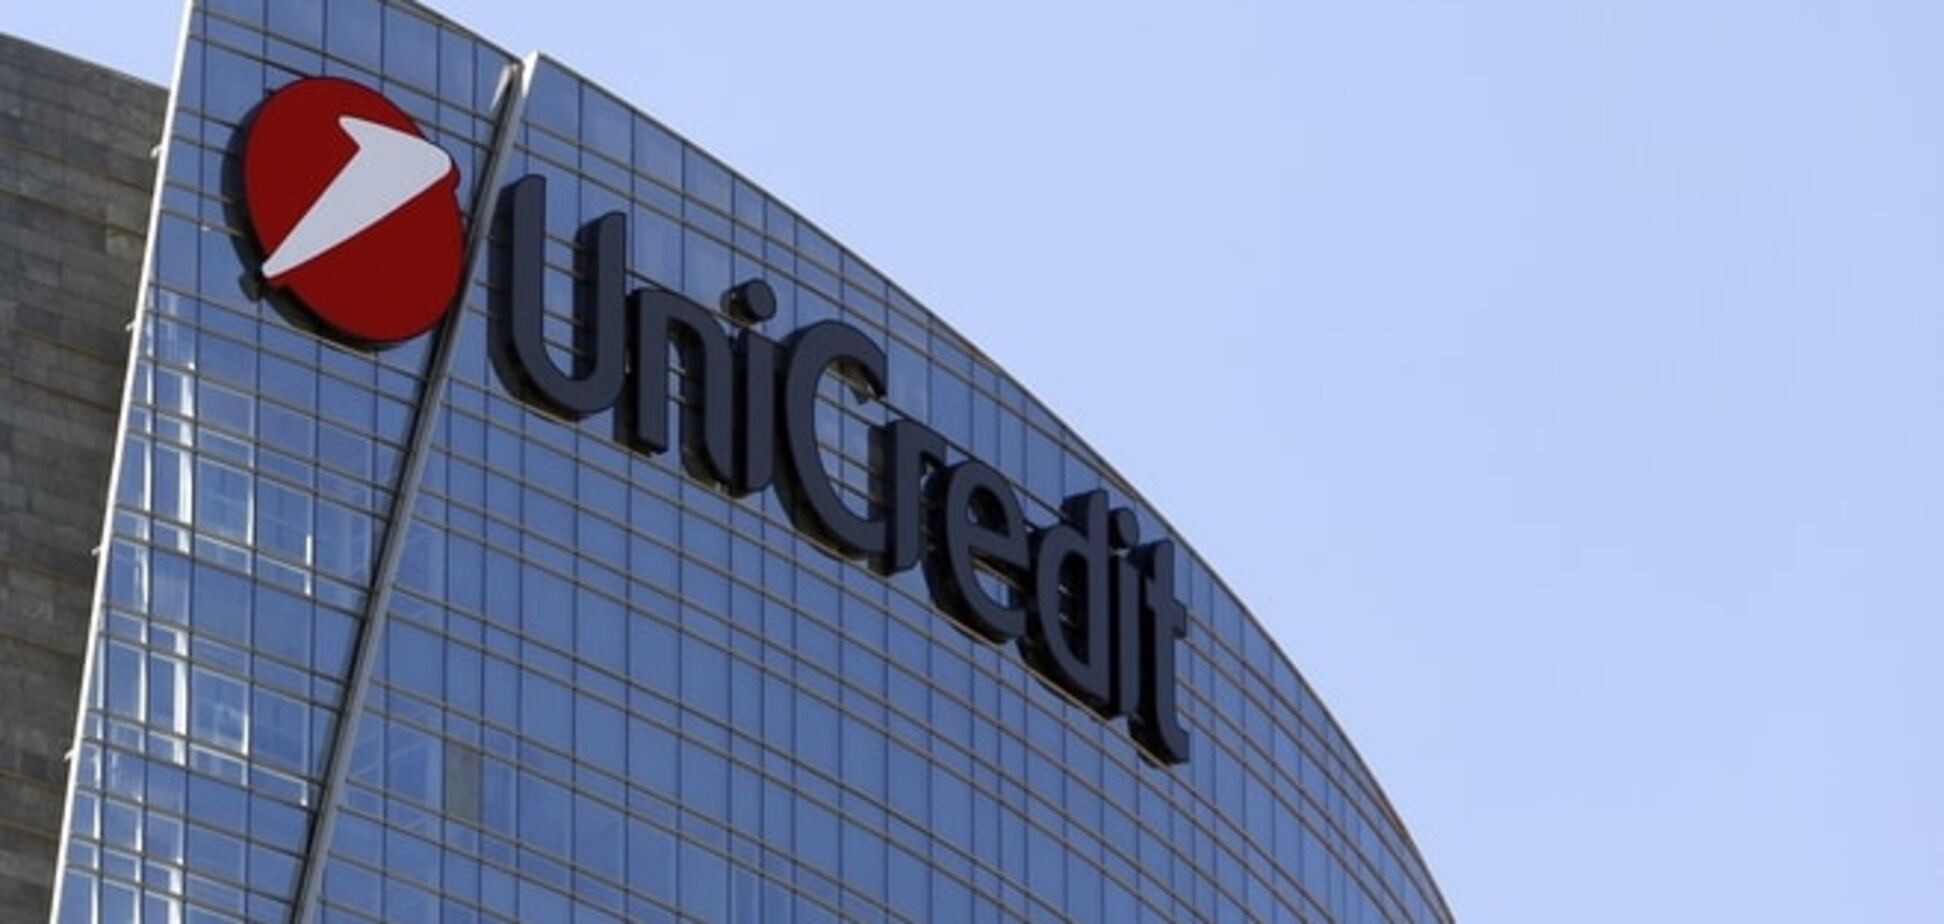 Из-за скандала вокруг UniCredit Bank Украина рискует потерять доверие западных инвесторов